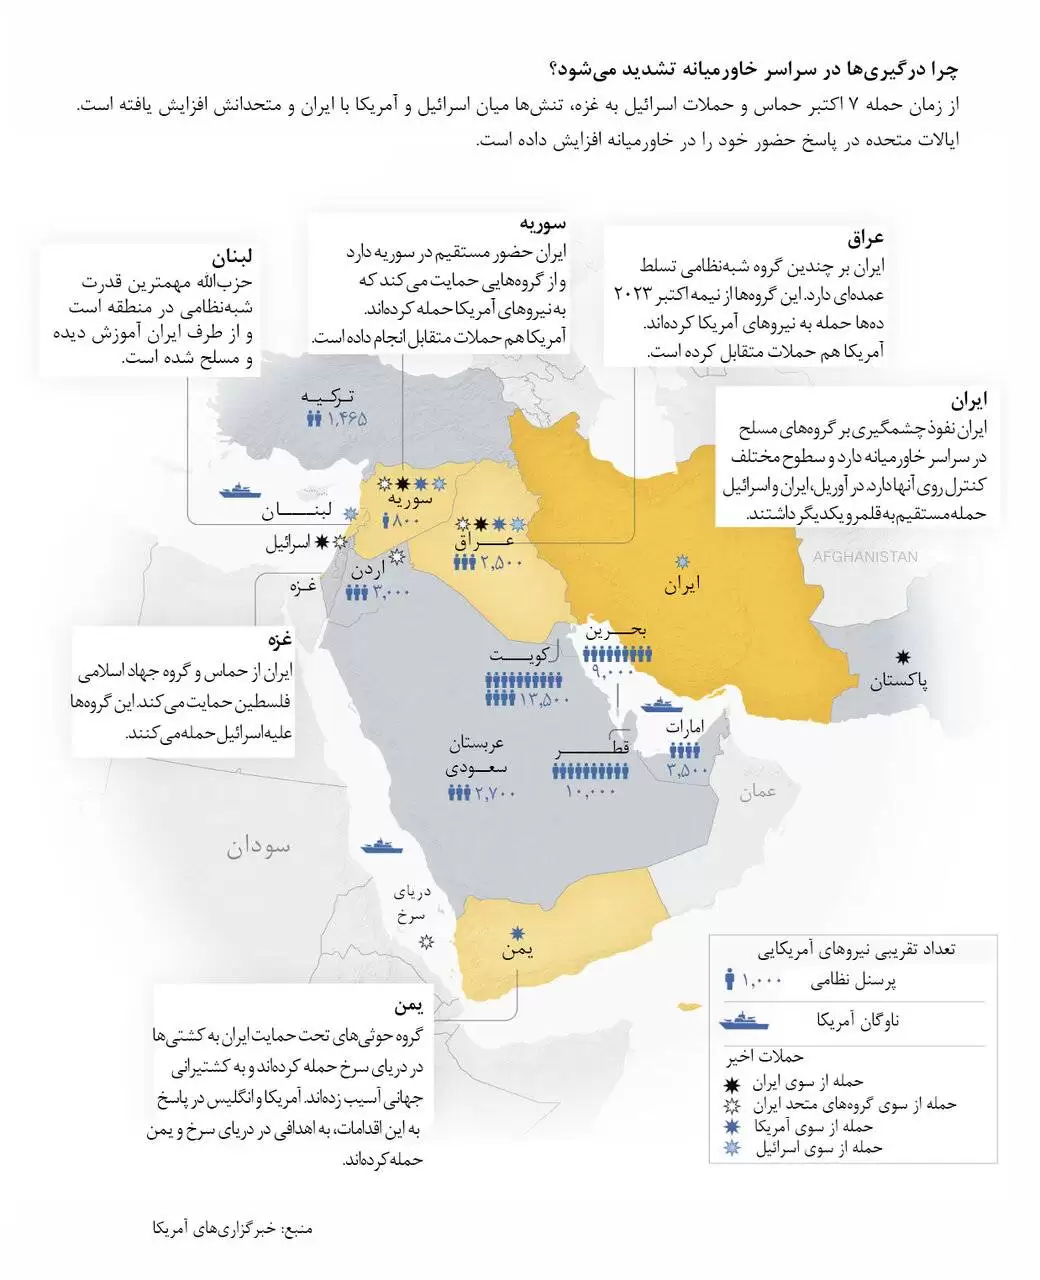 نقشه زد و خوردهای 7 ماه اخیر در خاورمیانه  -  تعداد نیروهای آمریکا در 9 کشور خاورمیانه